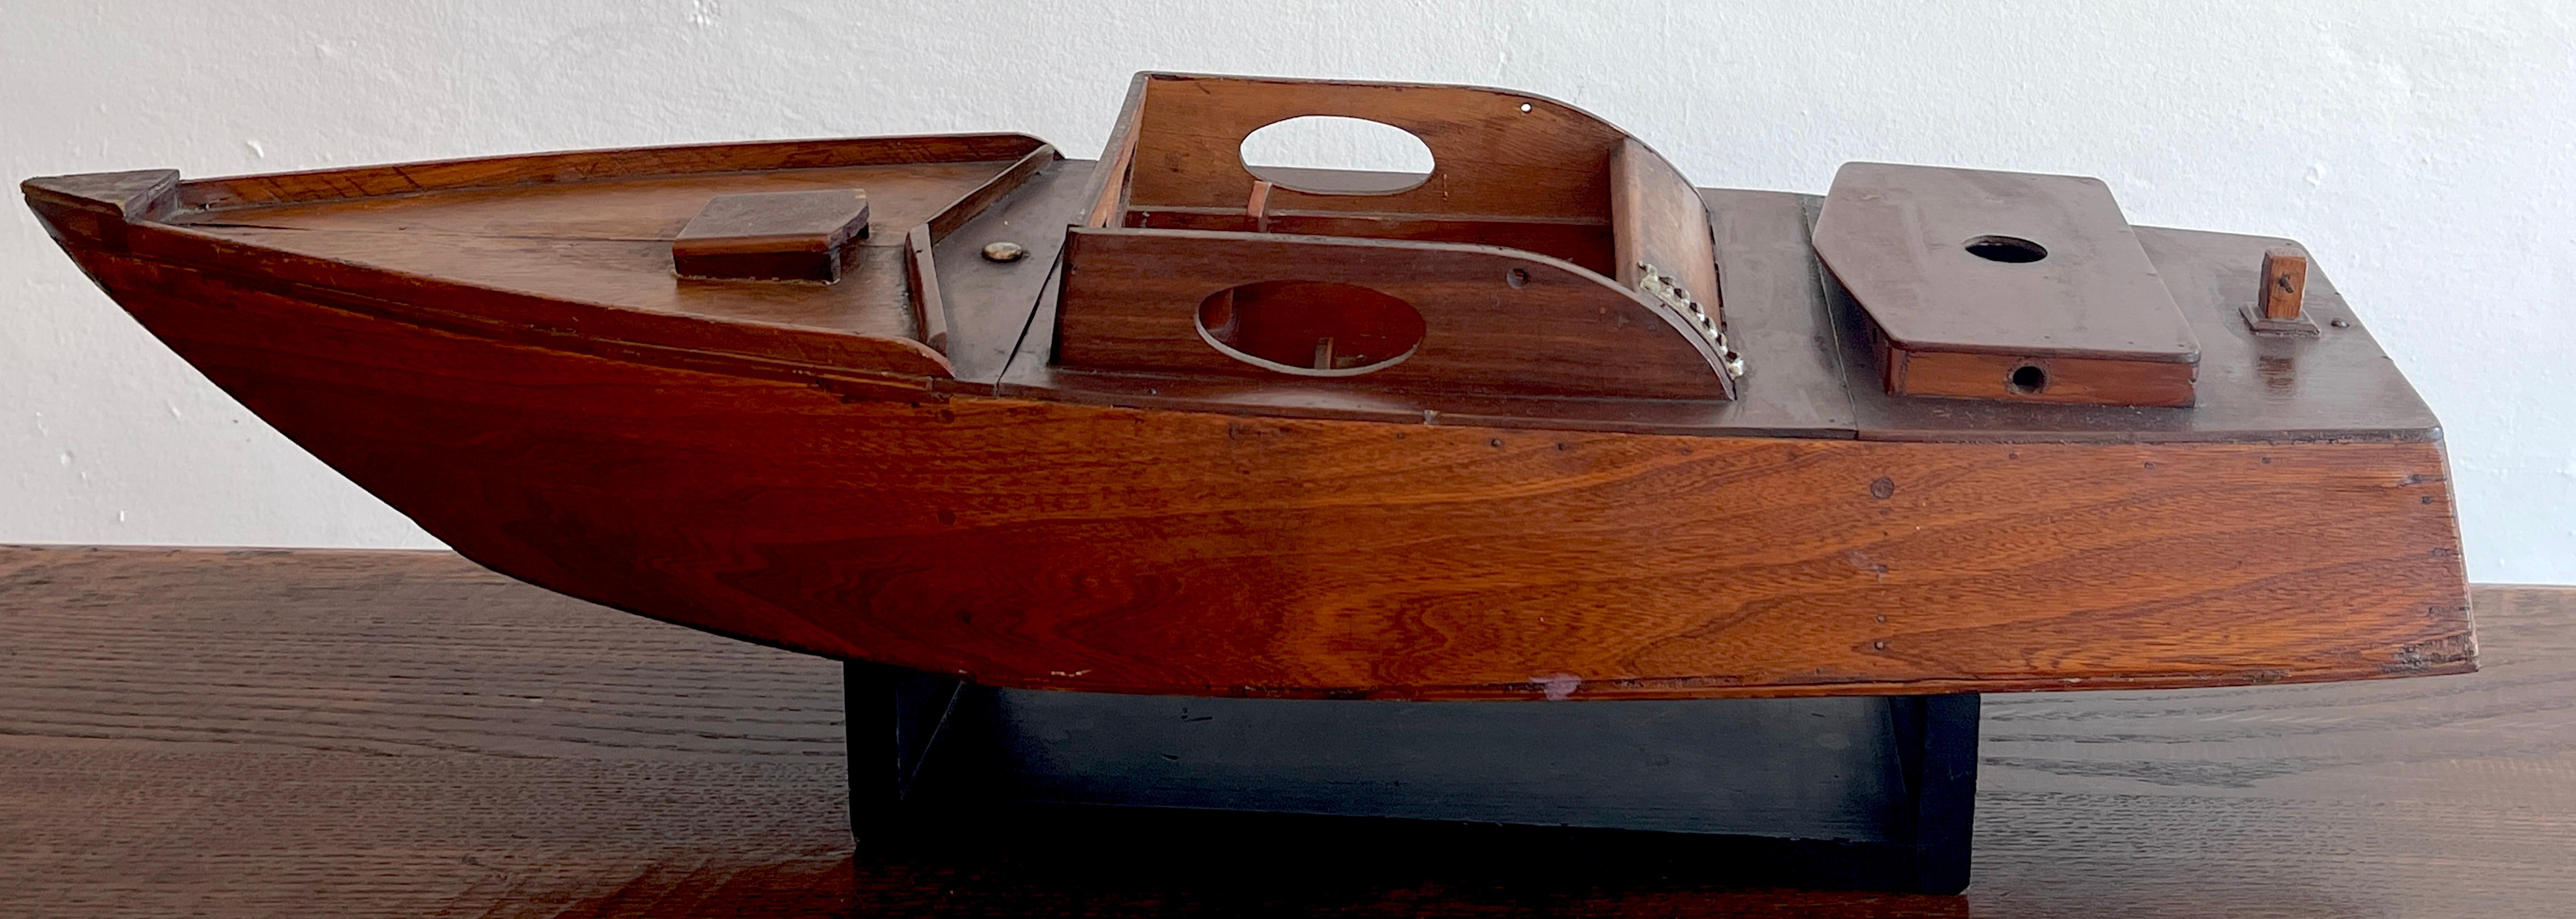 Hardwood American Vintage Model of a Speedboat 'Ricky-O' For Sale